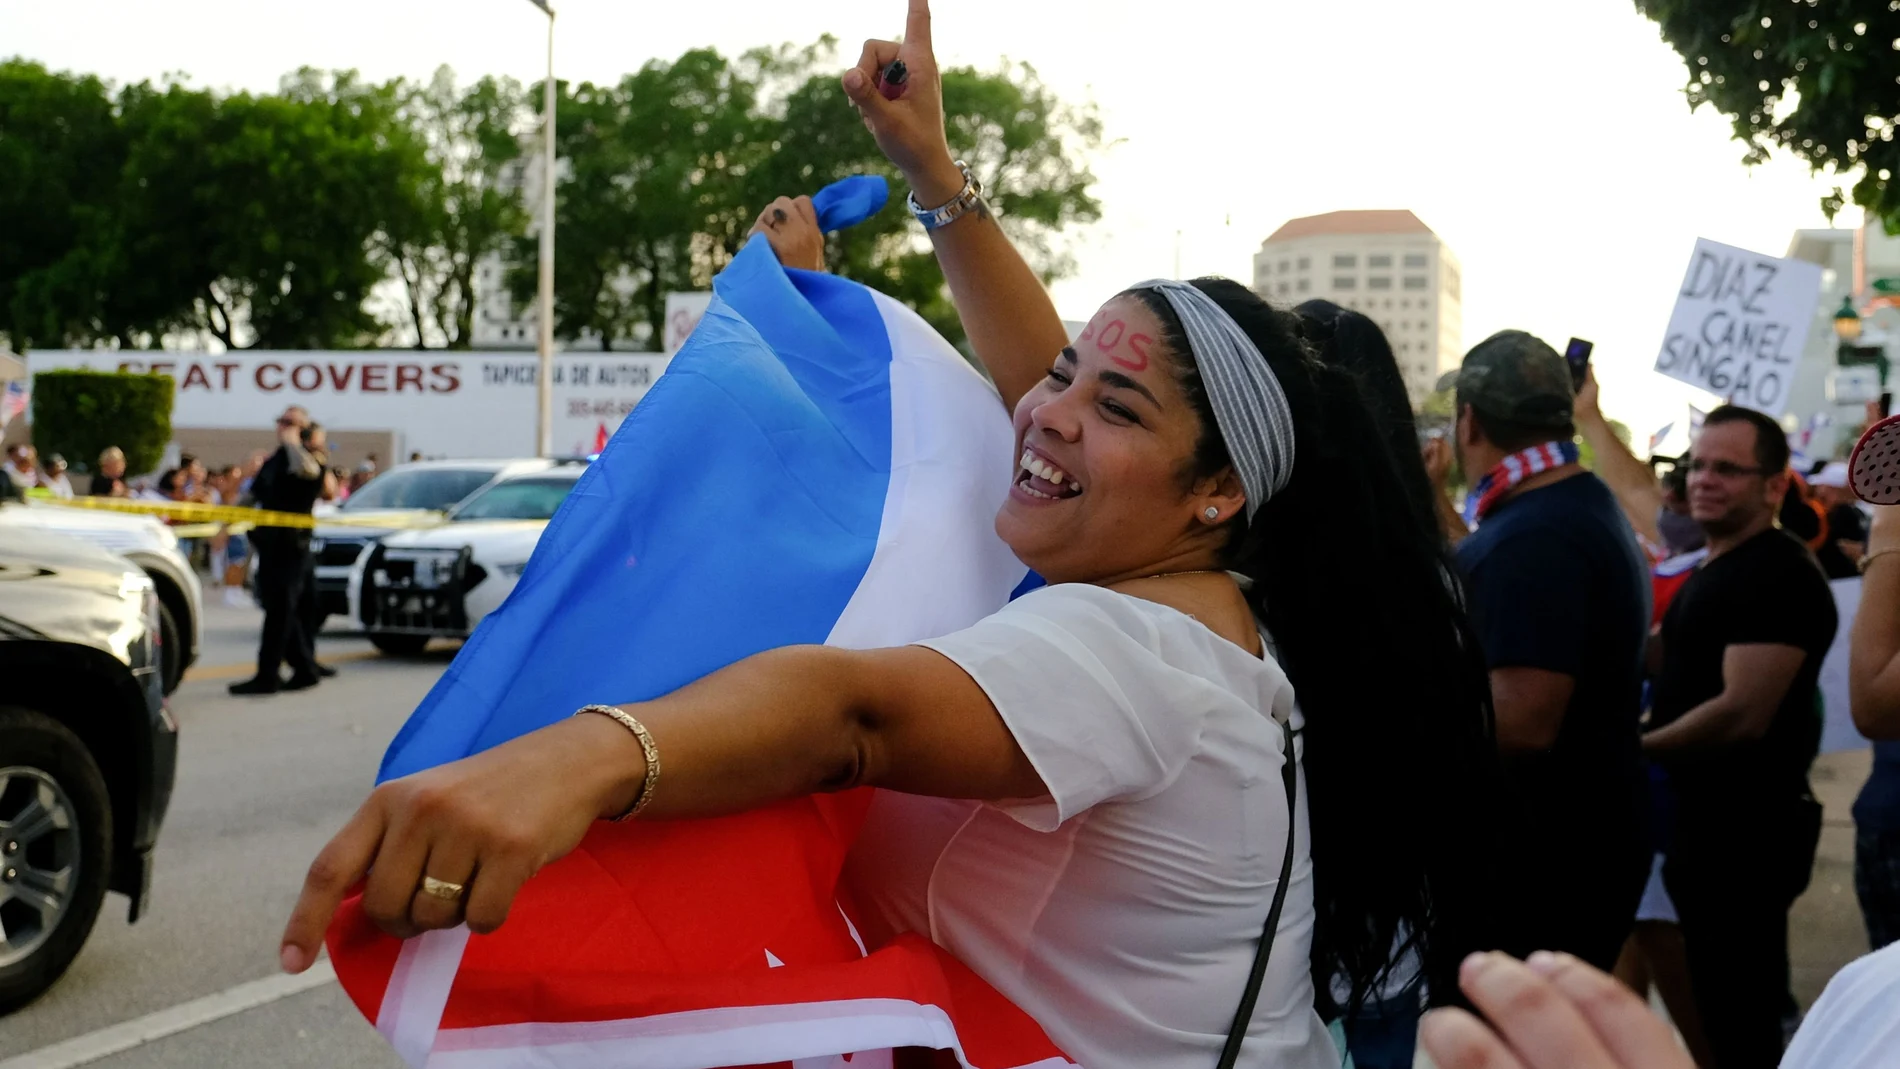 Gente en Miami festejando las protestas en Cuba